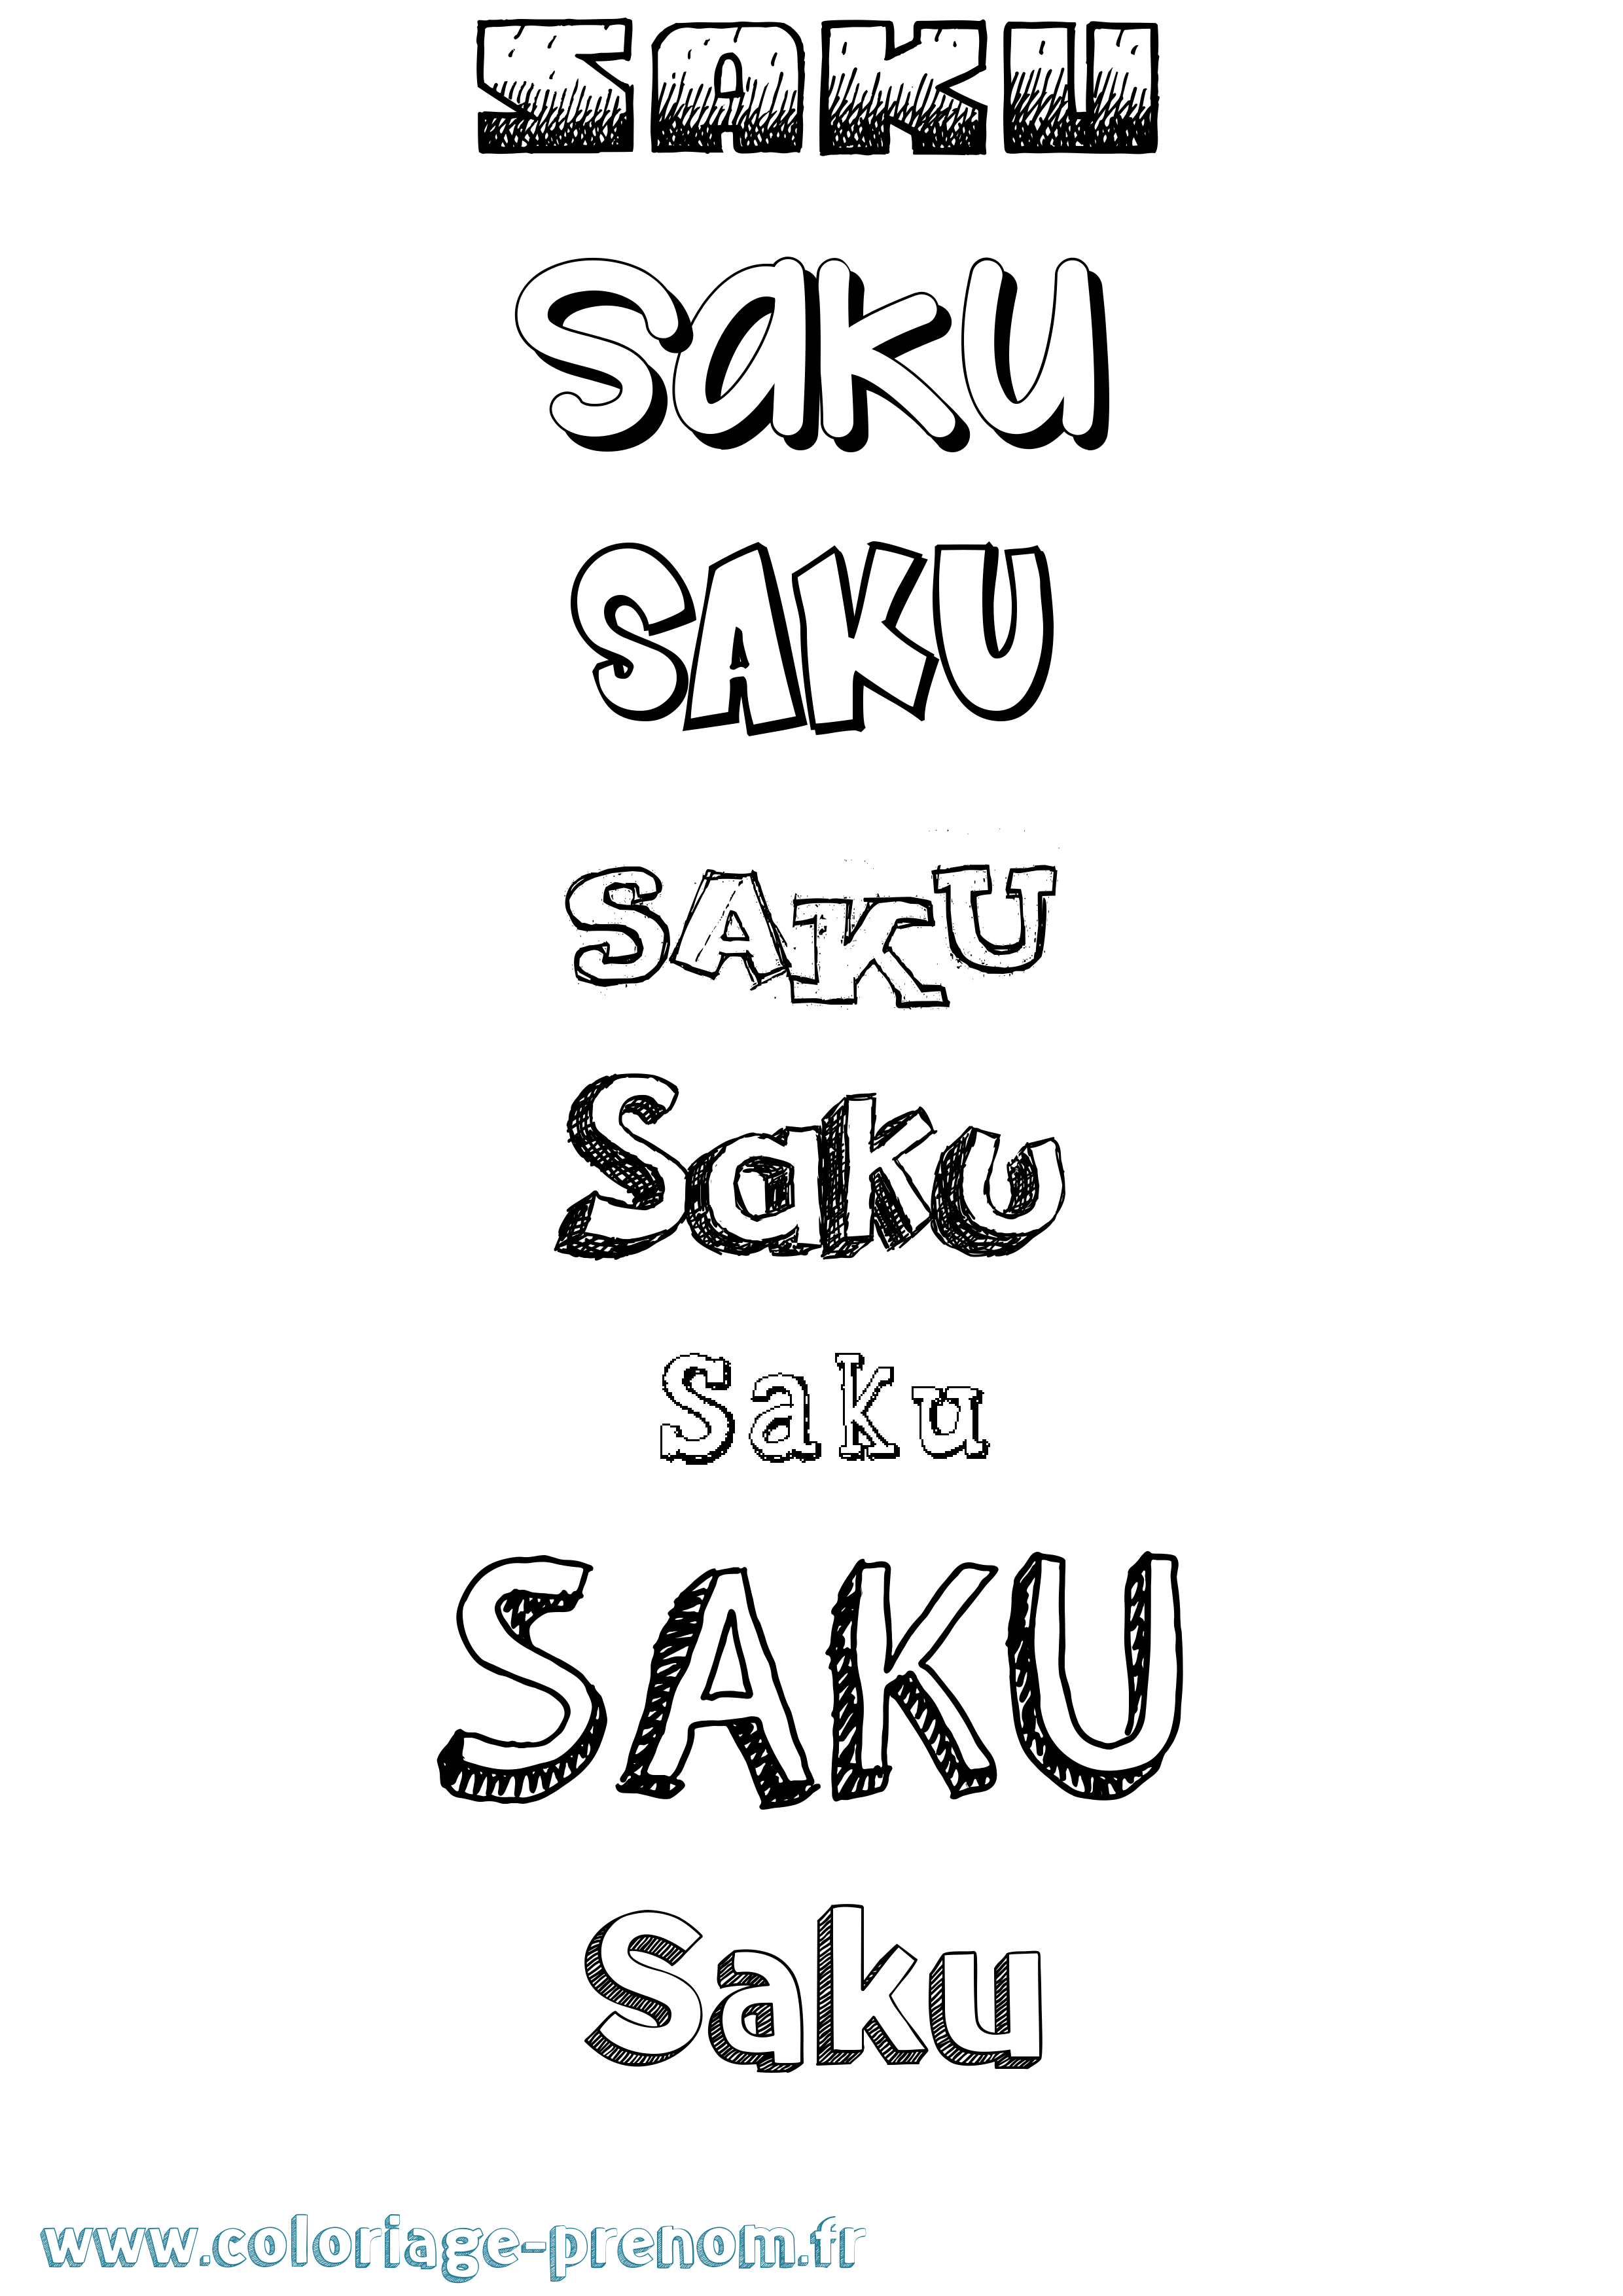 Coloriage prénom Saku Dessiné